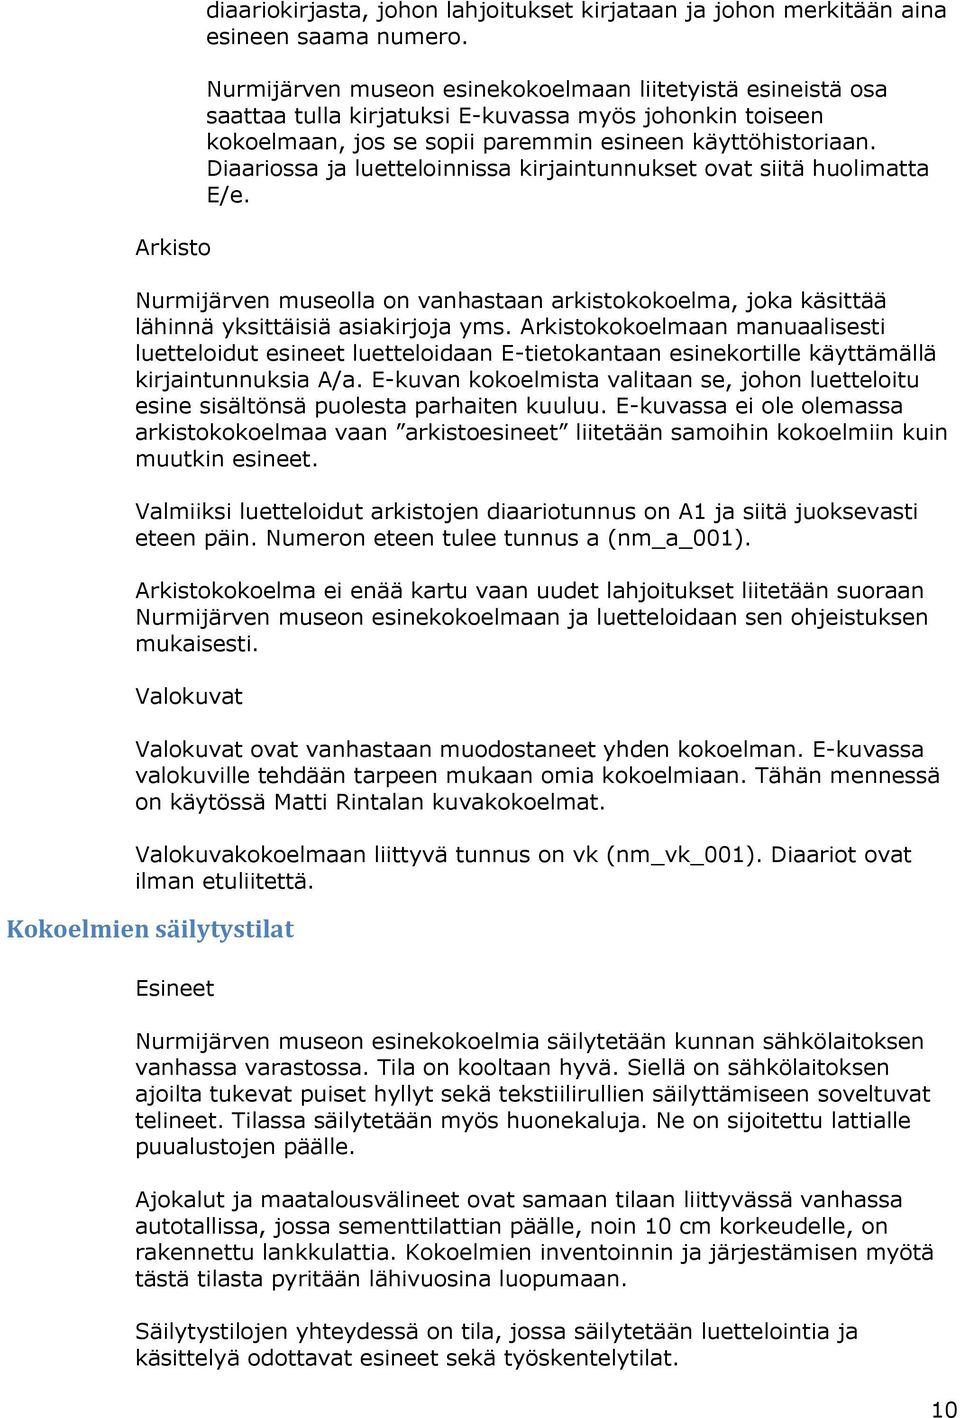 Diaariossa ja luetteloinnissa kirjaintunnukset ovat siitä huolimatta E/e. Nurmijärven museolla on vanhastaan arkistokokoelma, joka käsittää lähinnä yksittäisiä asiakirjoja yms.